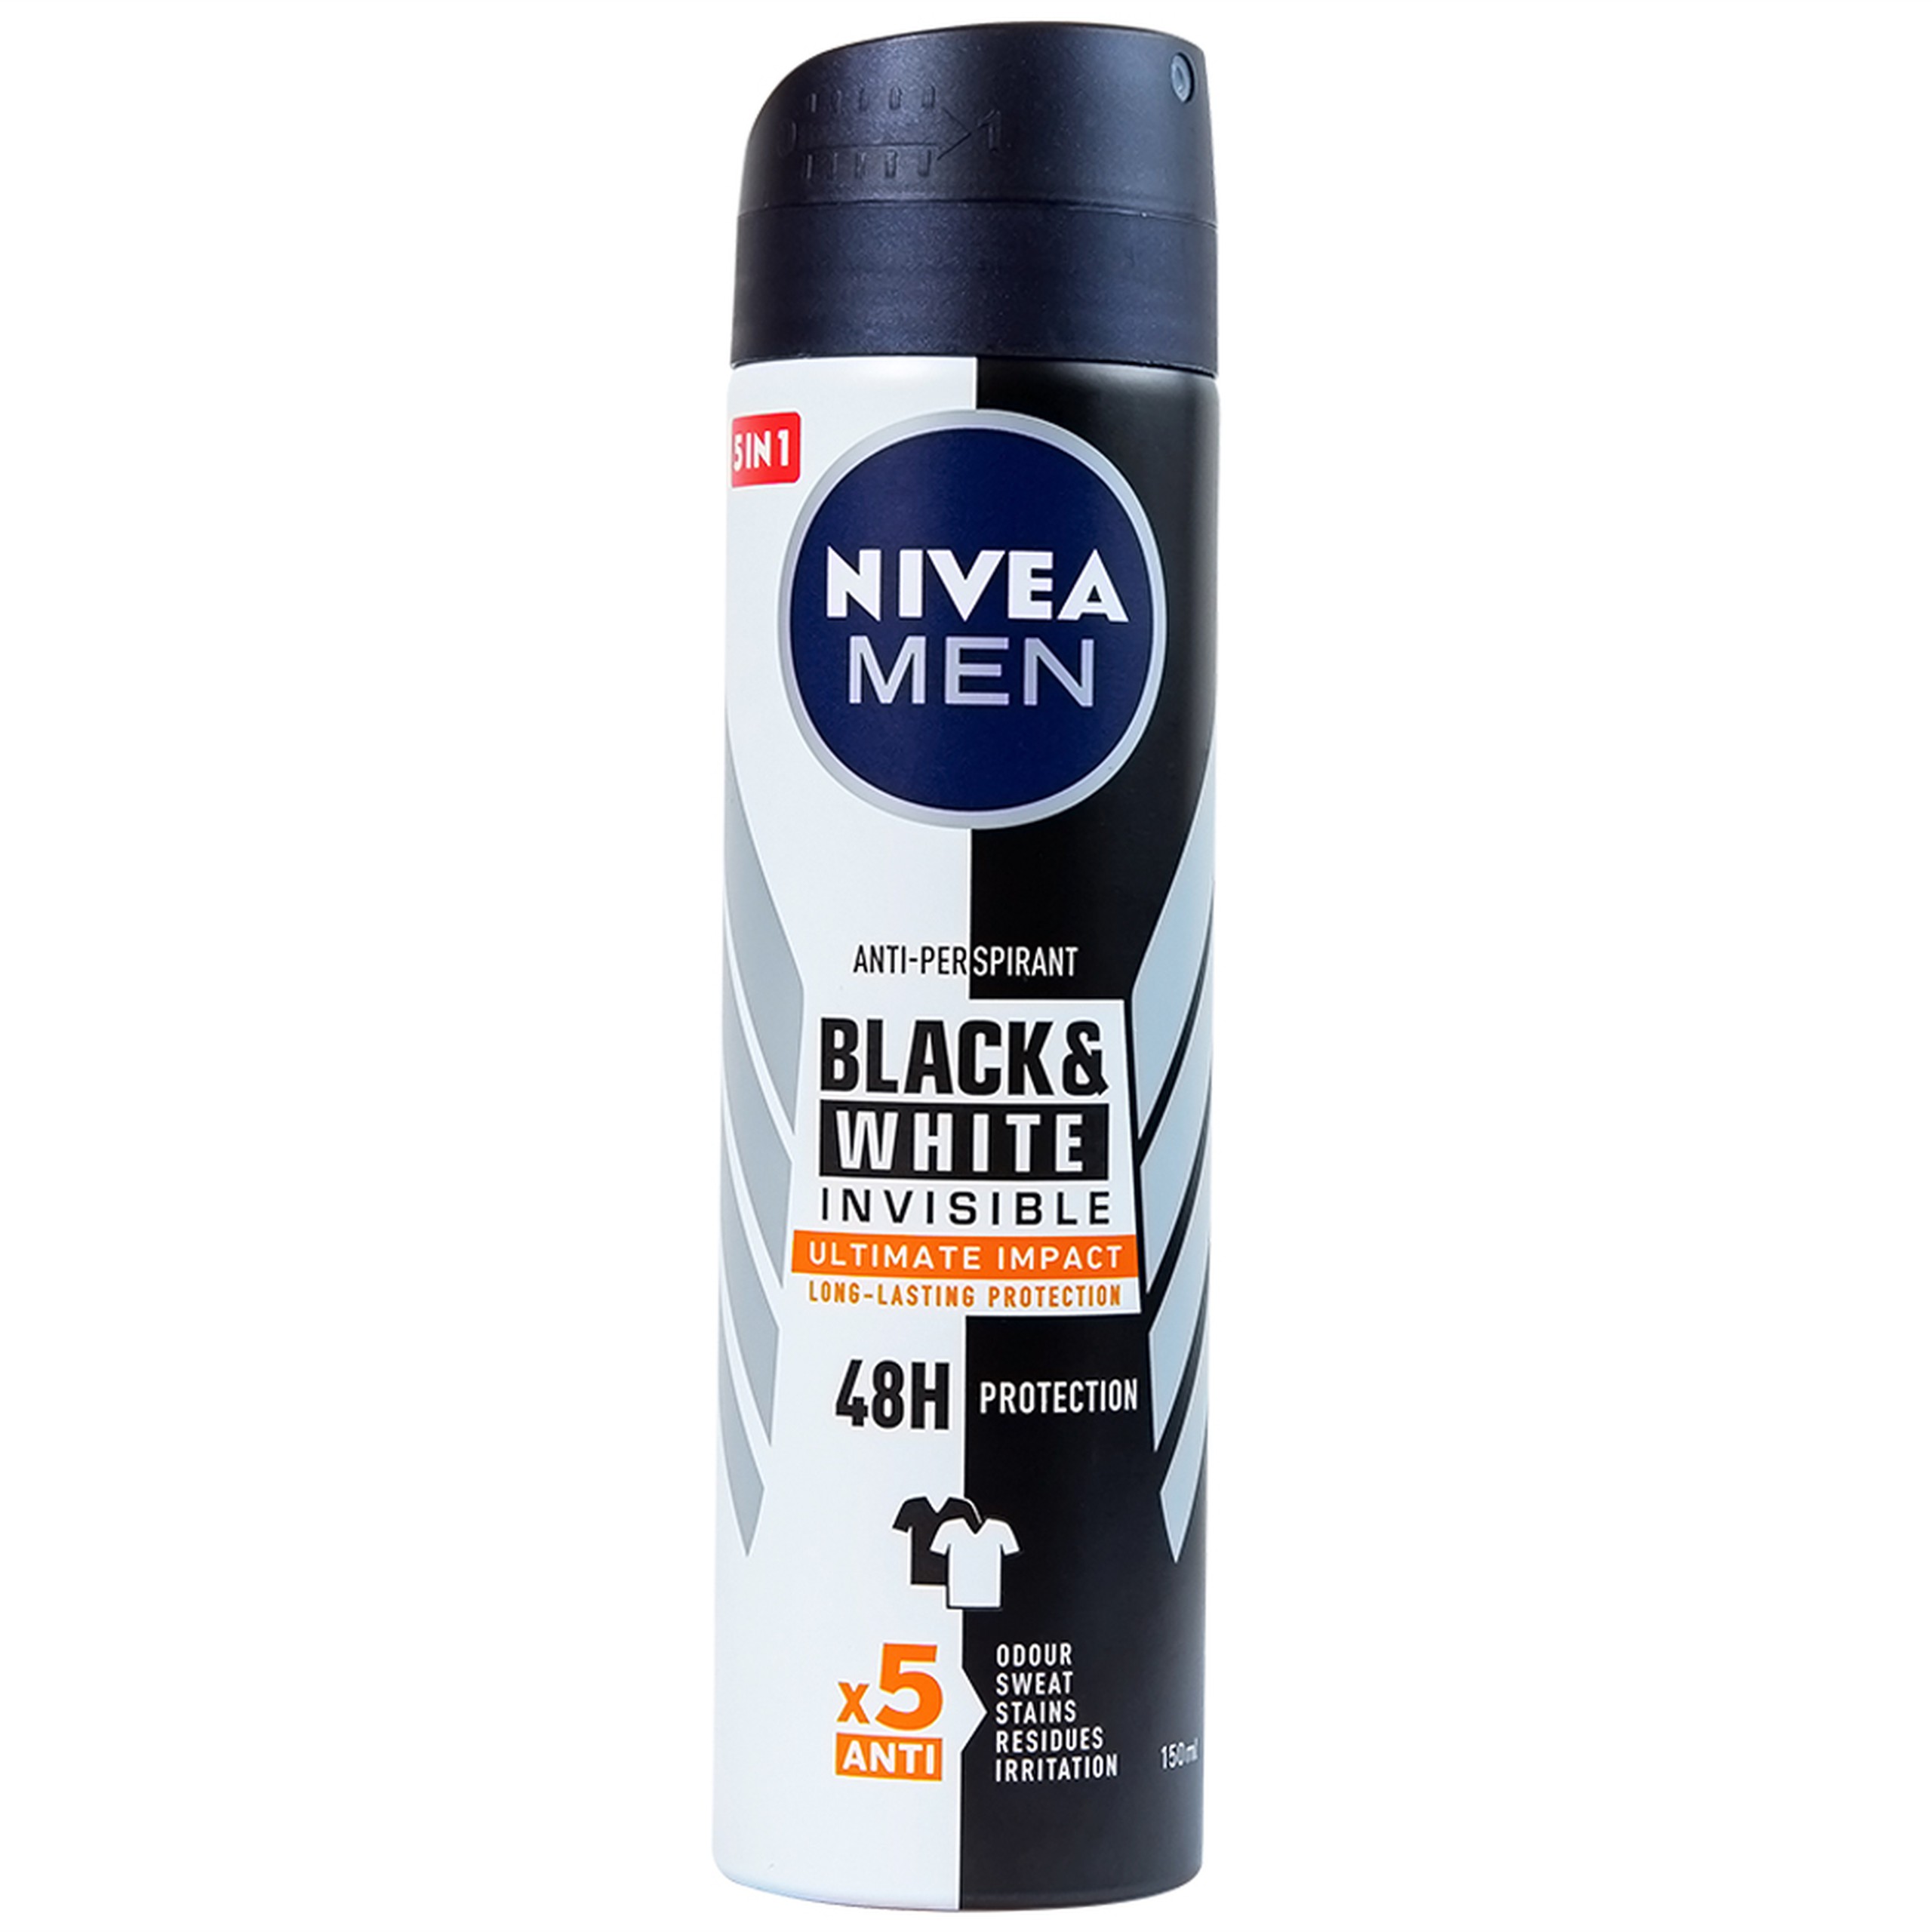 Xịt ngăn mùi Nivea Men Black & White Invisible Ultimate Impact giảm vết ố vàng, mồ hôi và mùi trong 48h (150ml) 